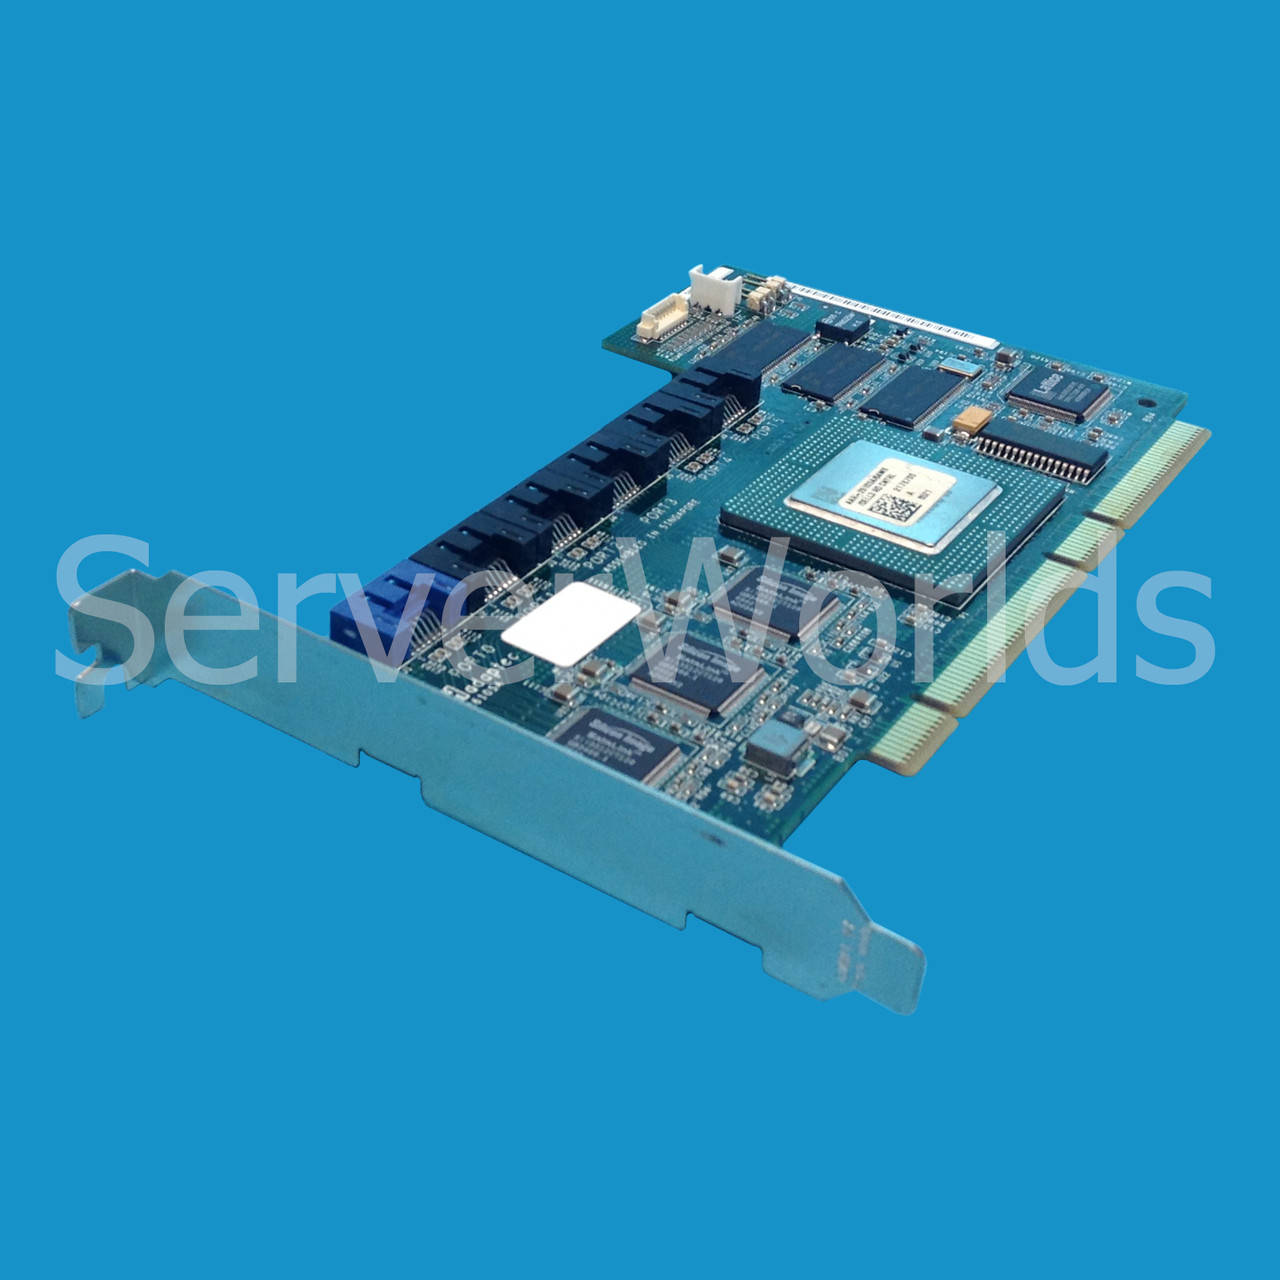 Dell H2052 Cerc 6 PCI-X SATA 6 Channel 1.5GBPS Raid Controller